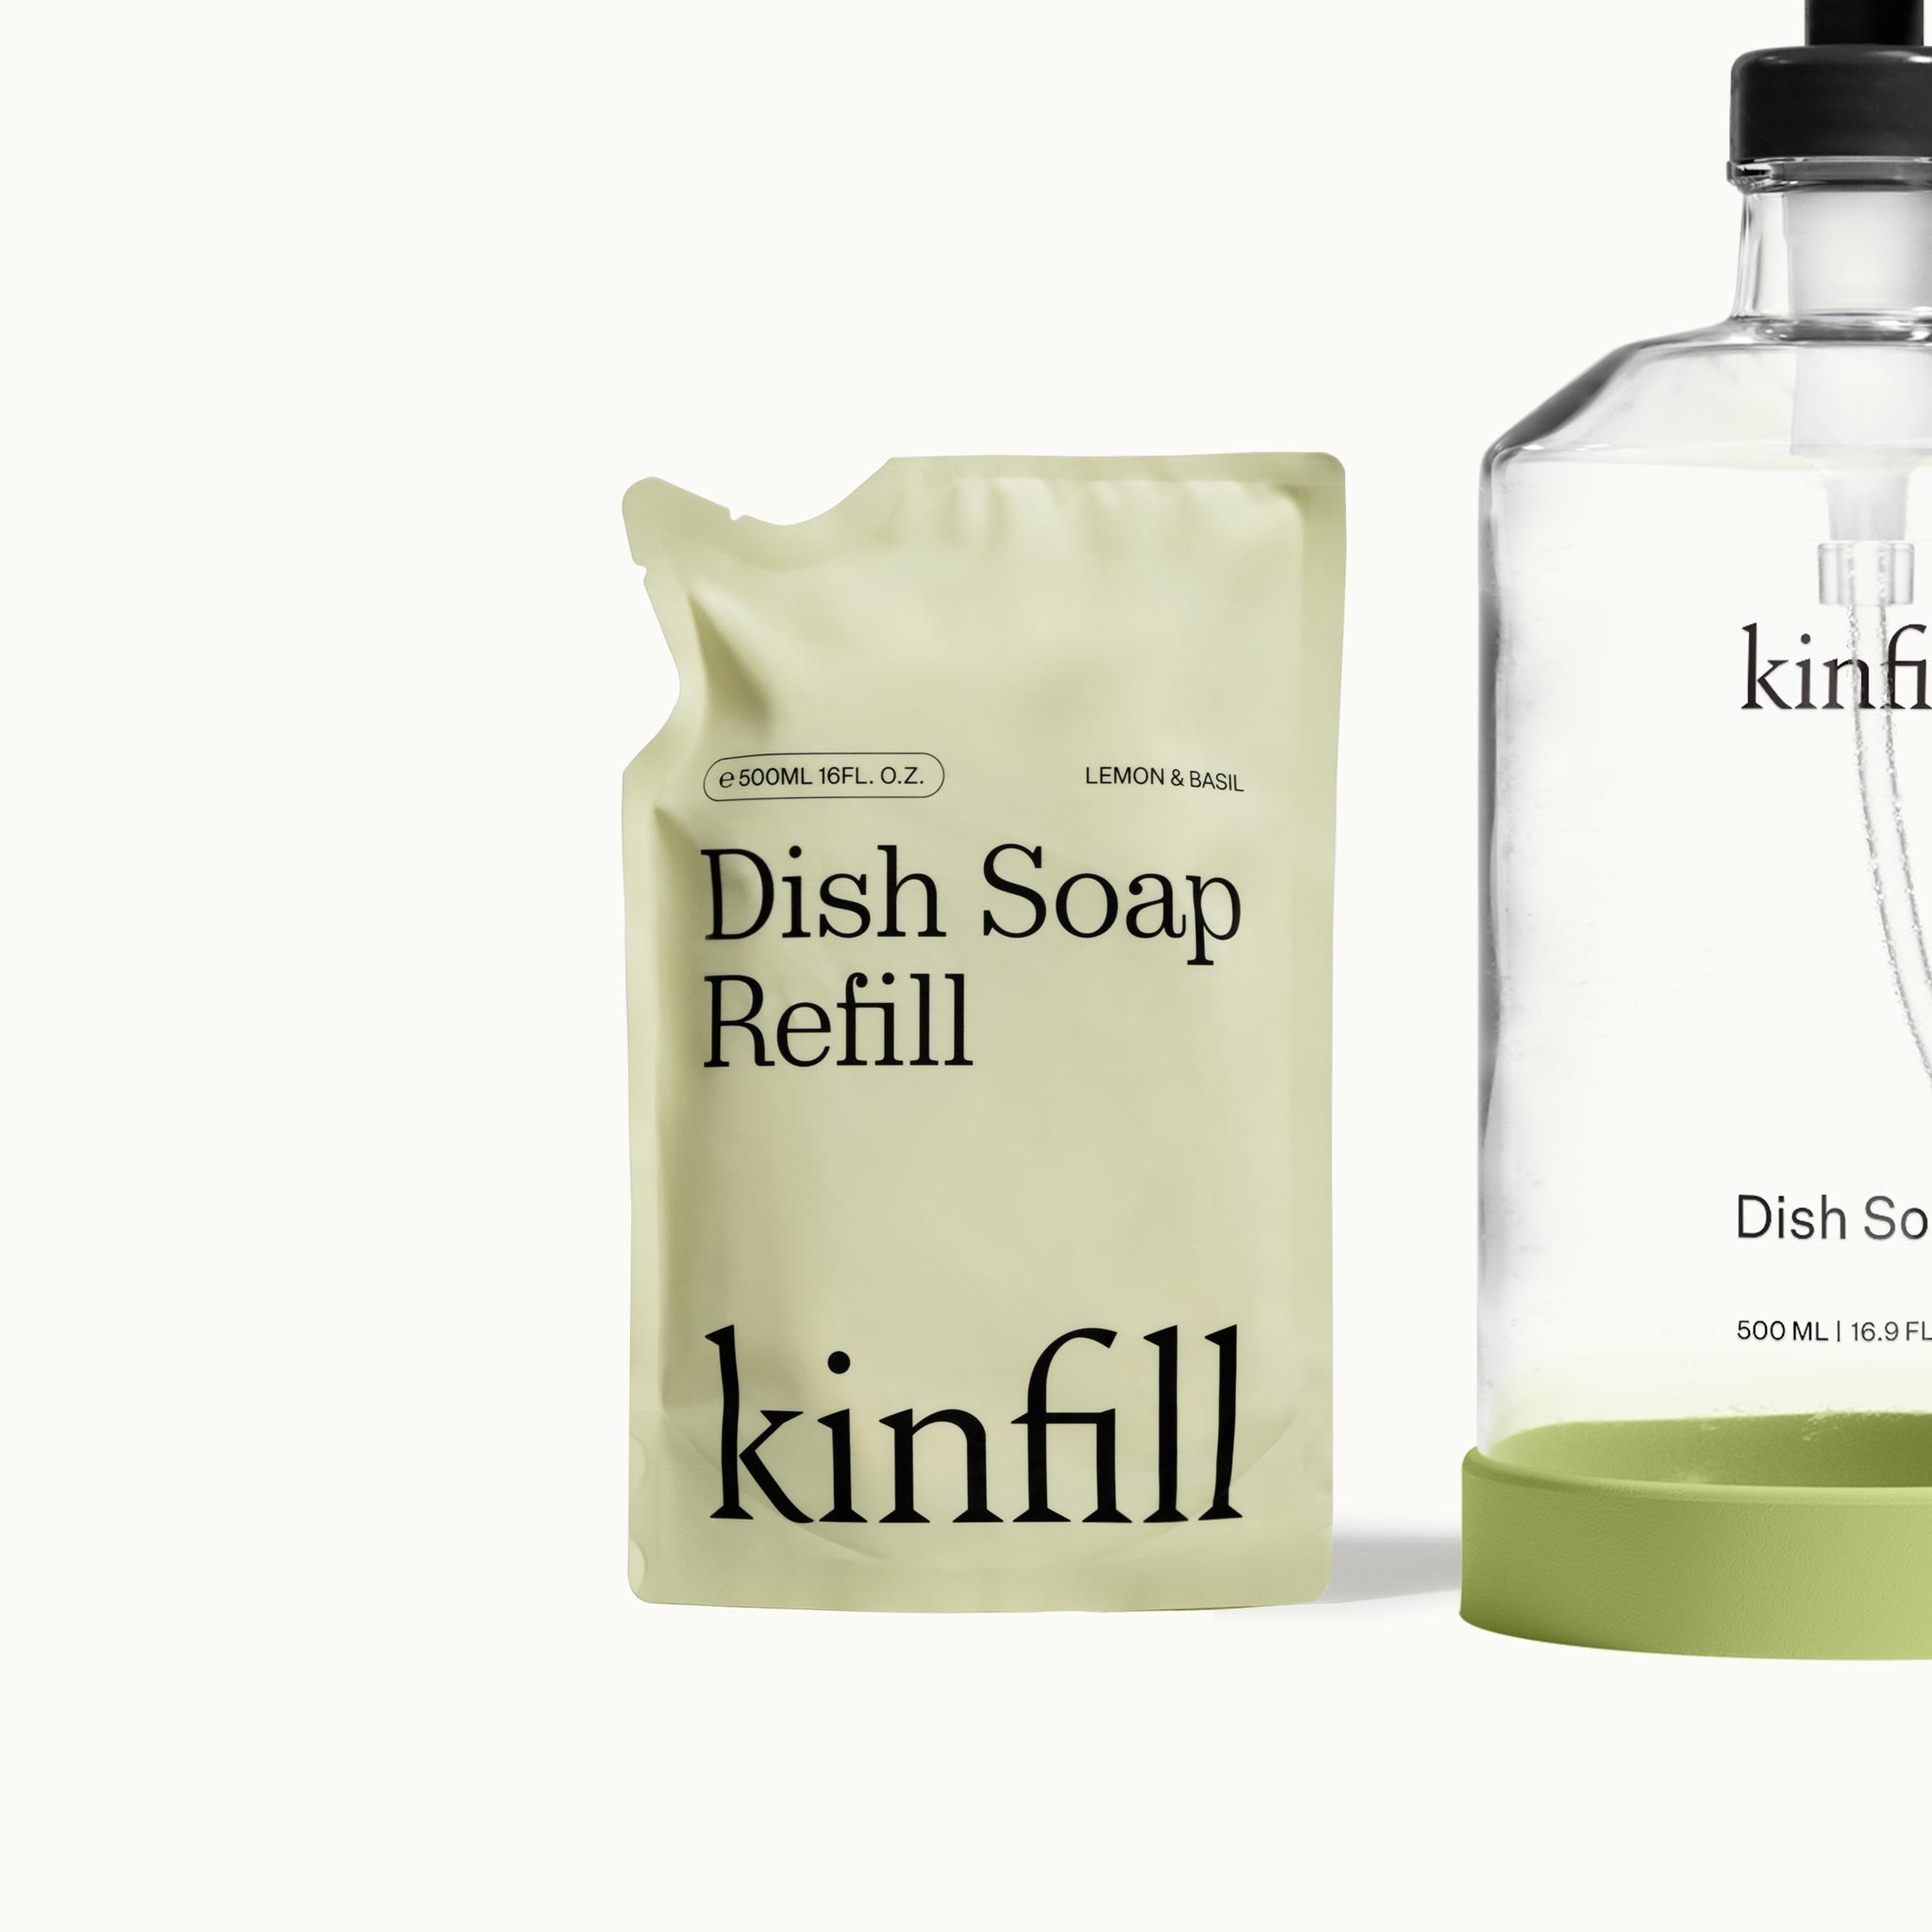 Dish Soap Refill • Lemon & Basil